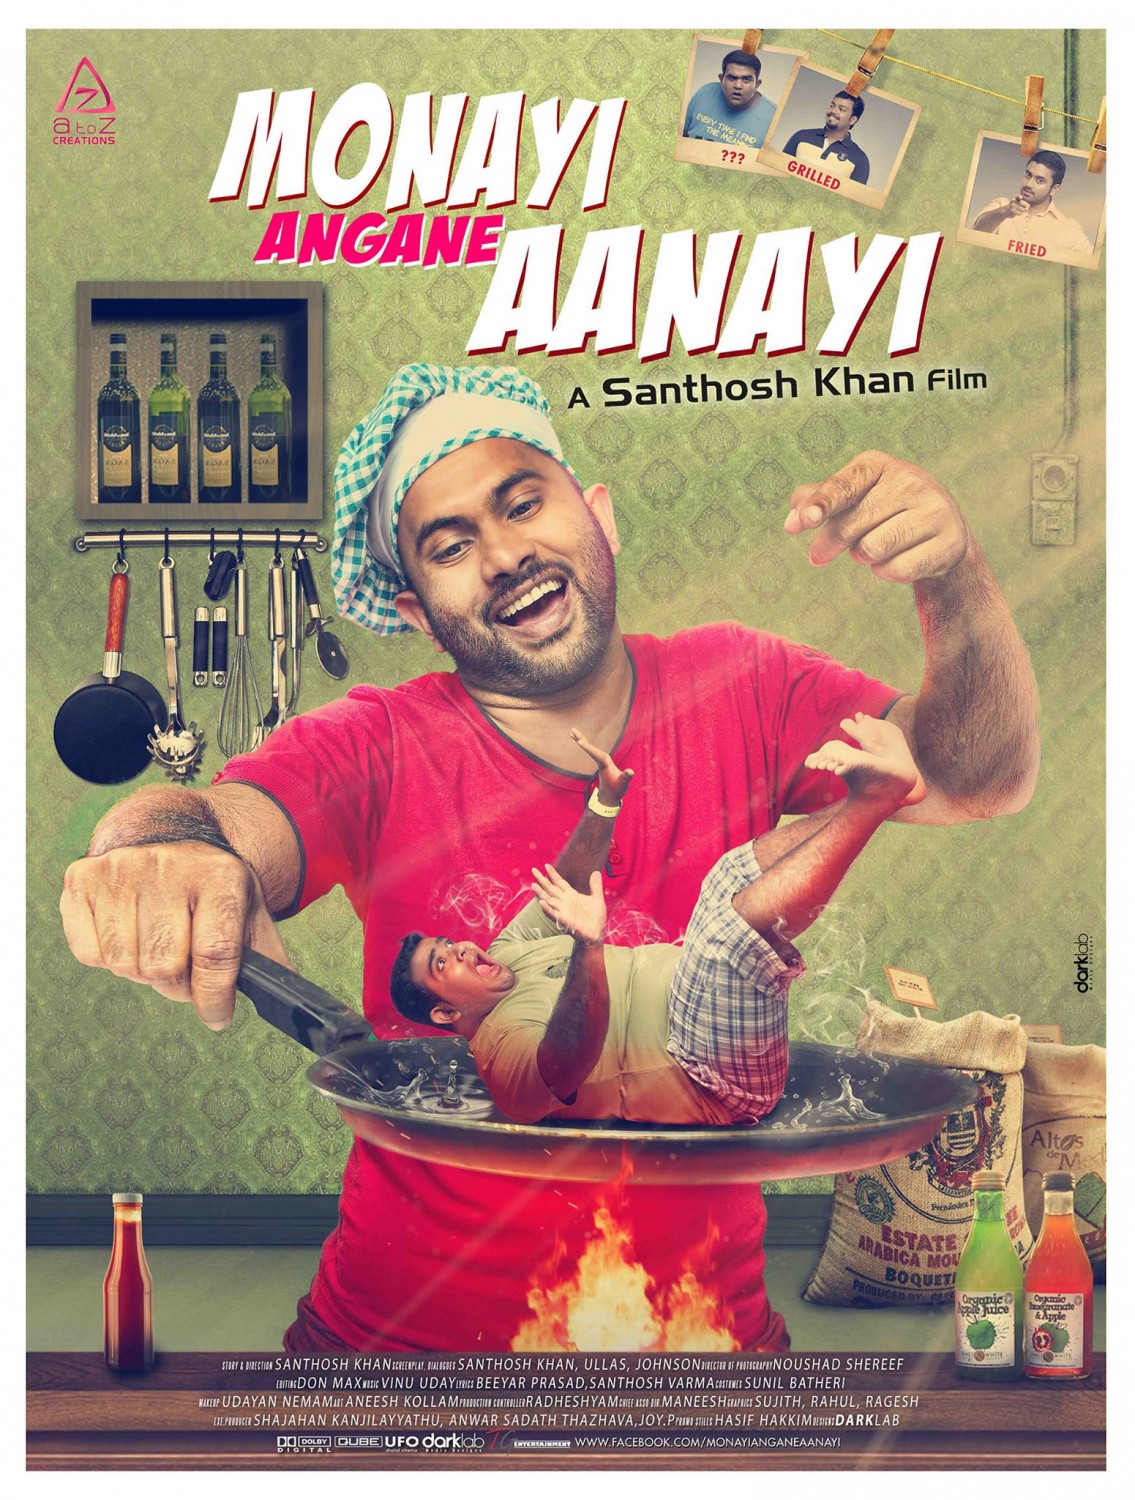 Extra Large Movie Poster Image for Monayi angane aanayi (#3 of 3)